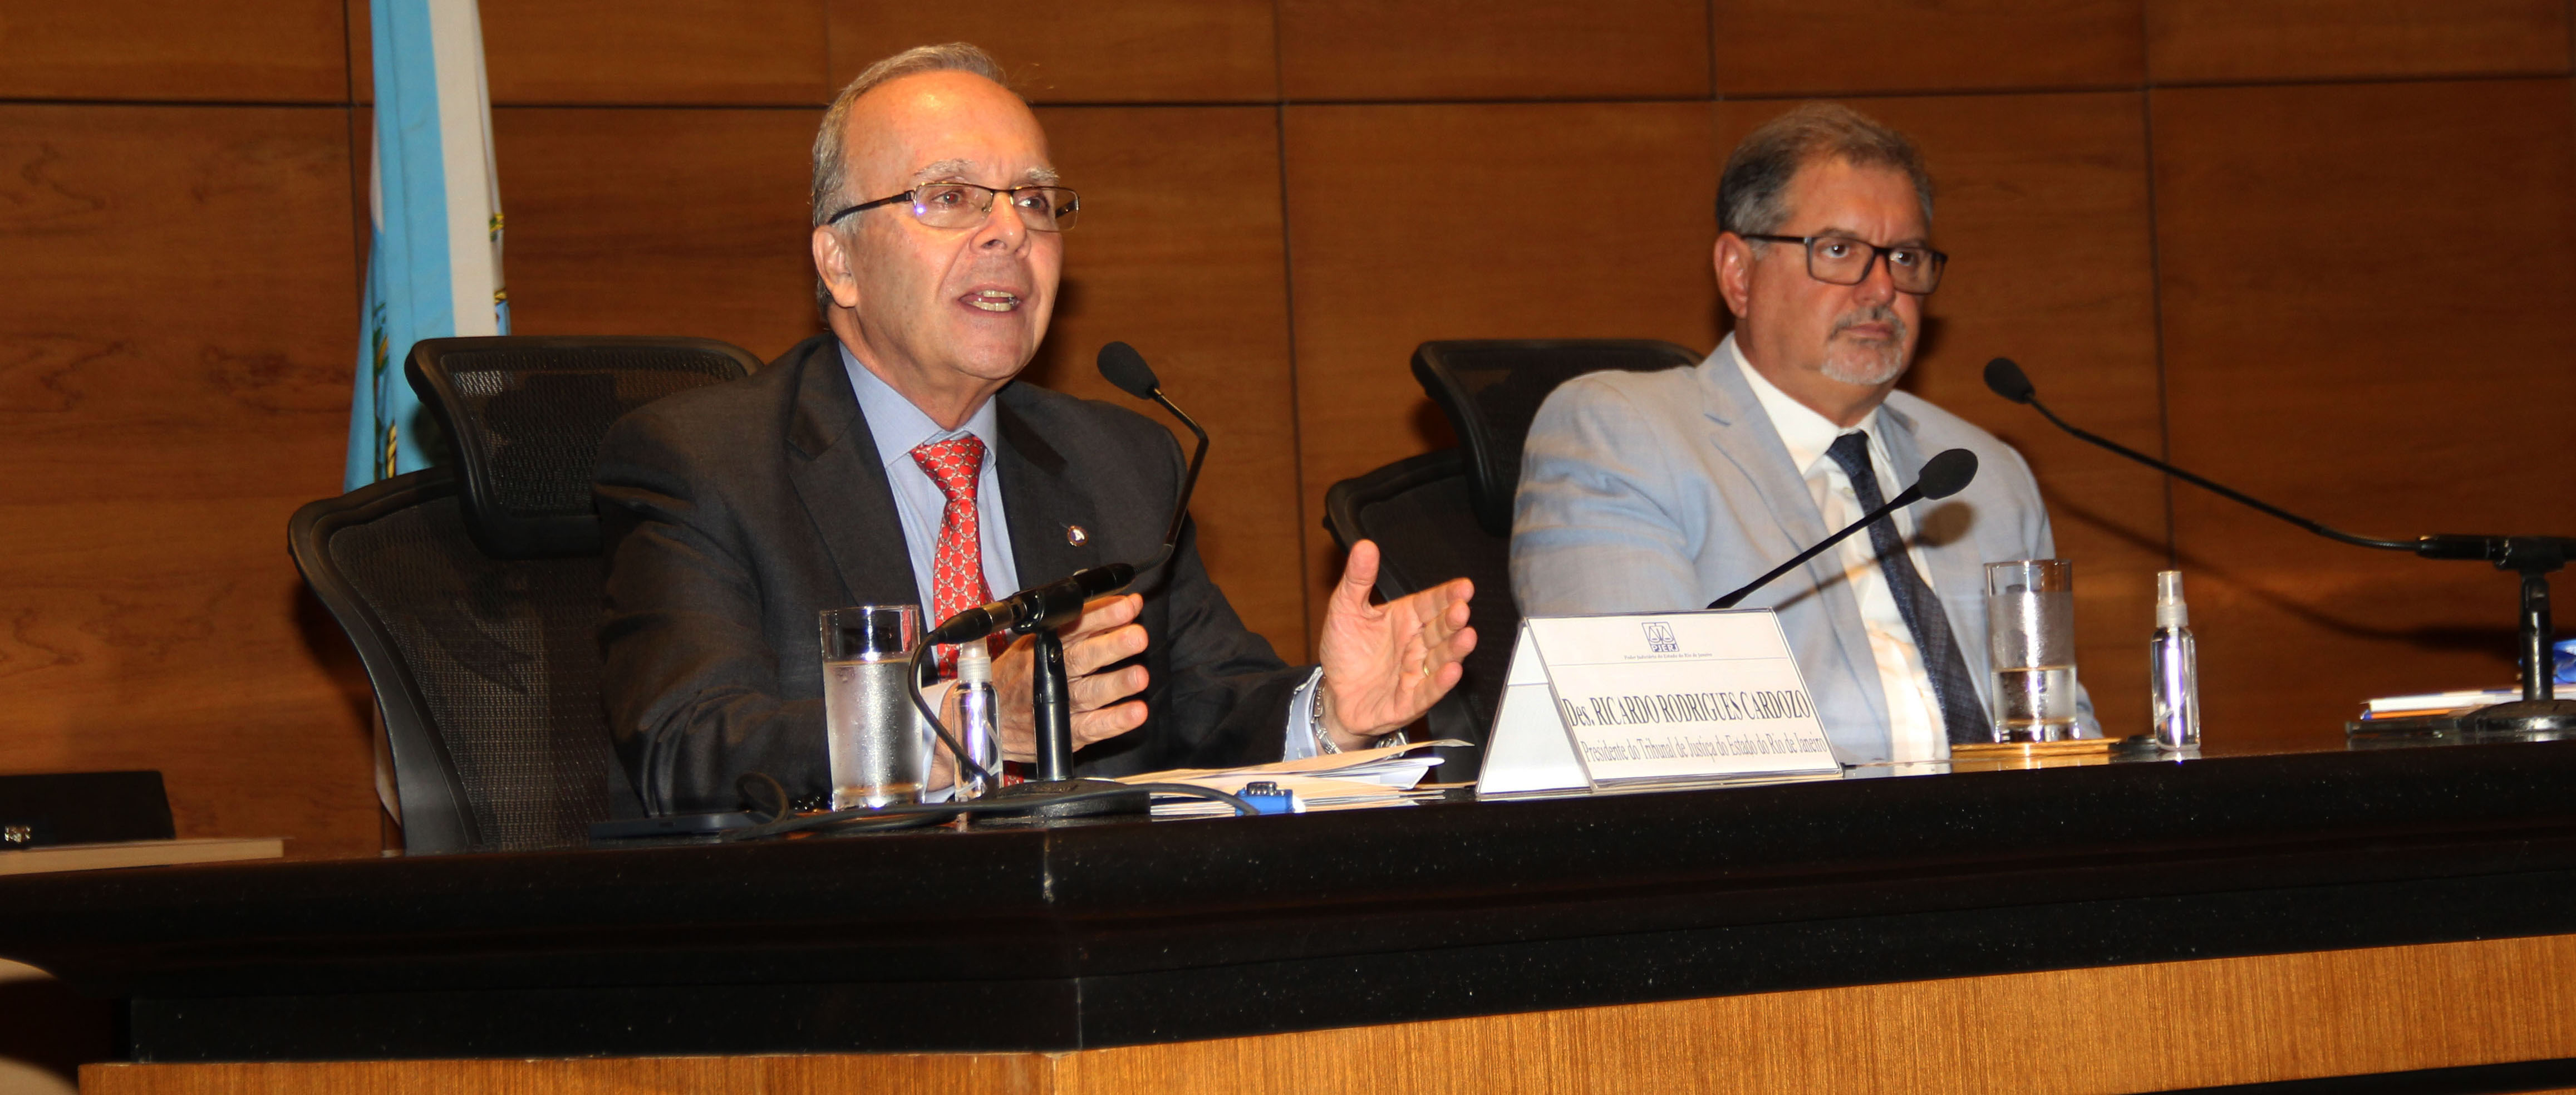 O presidente do TJRJ, desembargador Ricardo Cardozo, com o presidente do Procon Cássio Coelho.